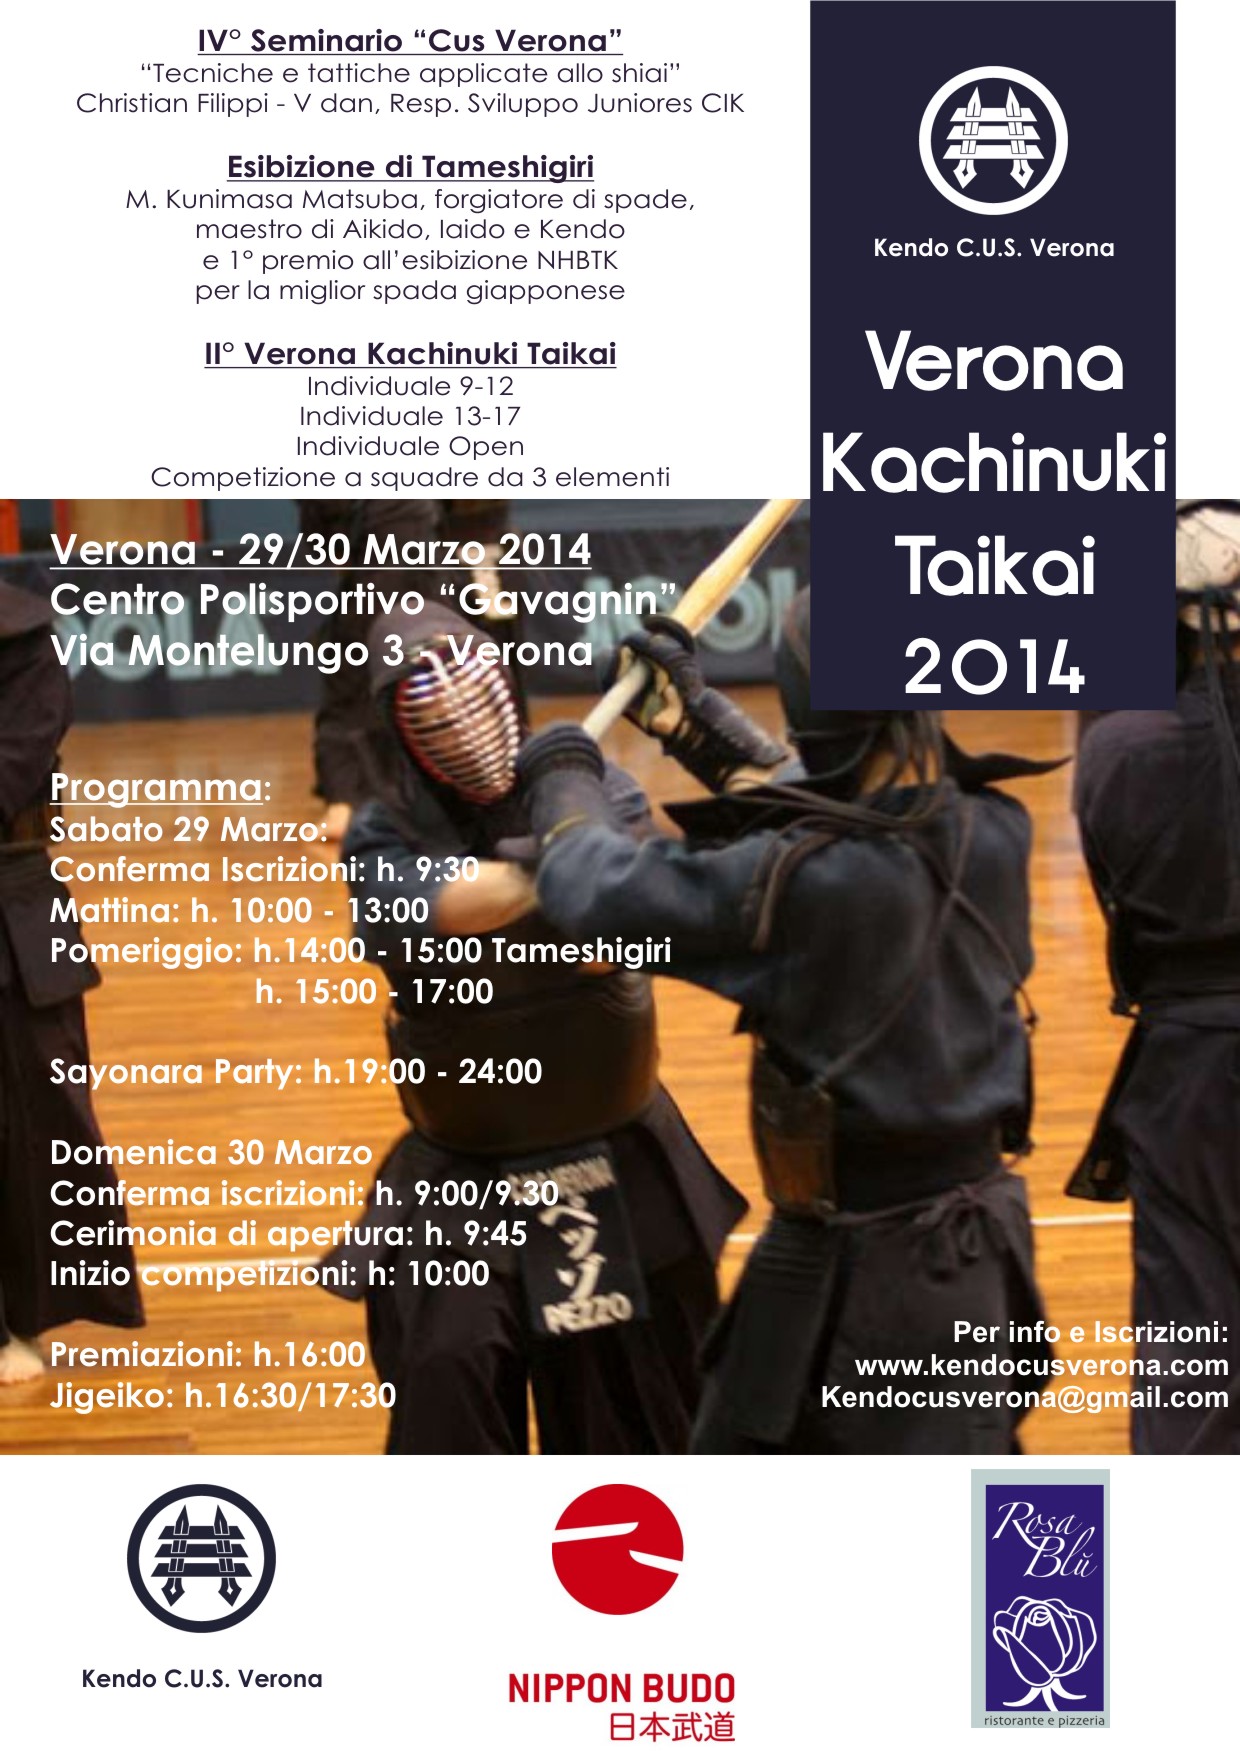 IV° Seminario “Cus Verona” e II° Verona Taikai Verona_Taikai_2014